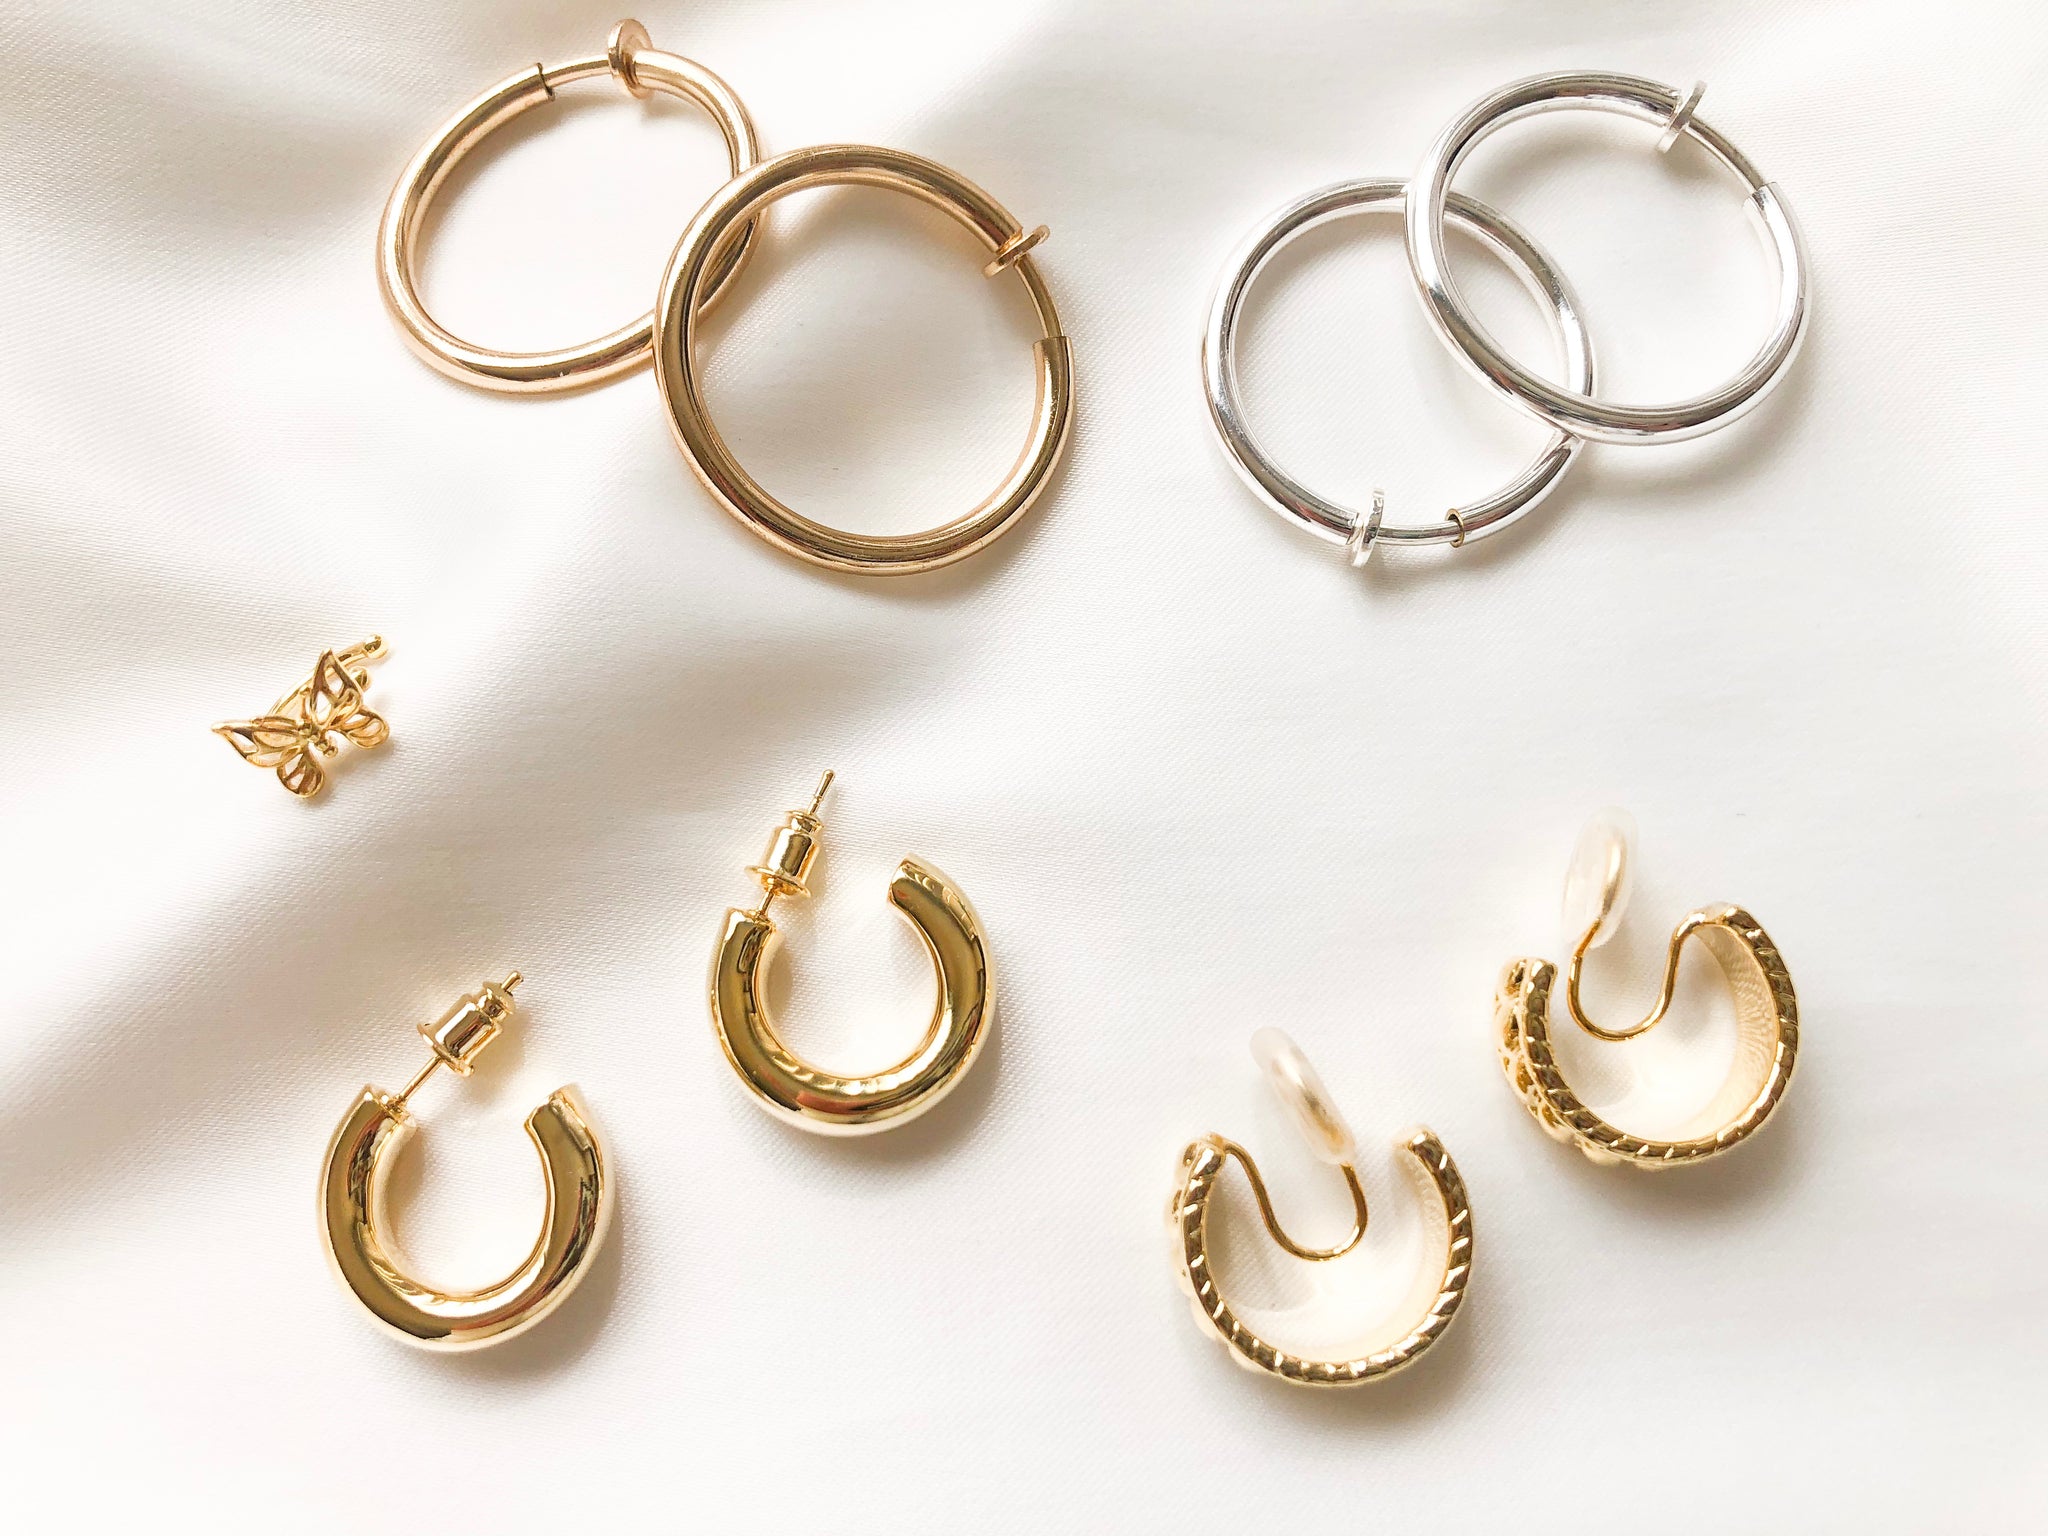 How To Style Hoop Earrings